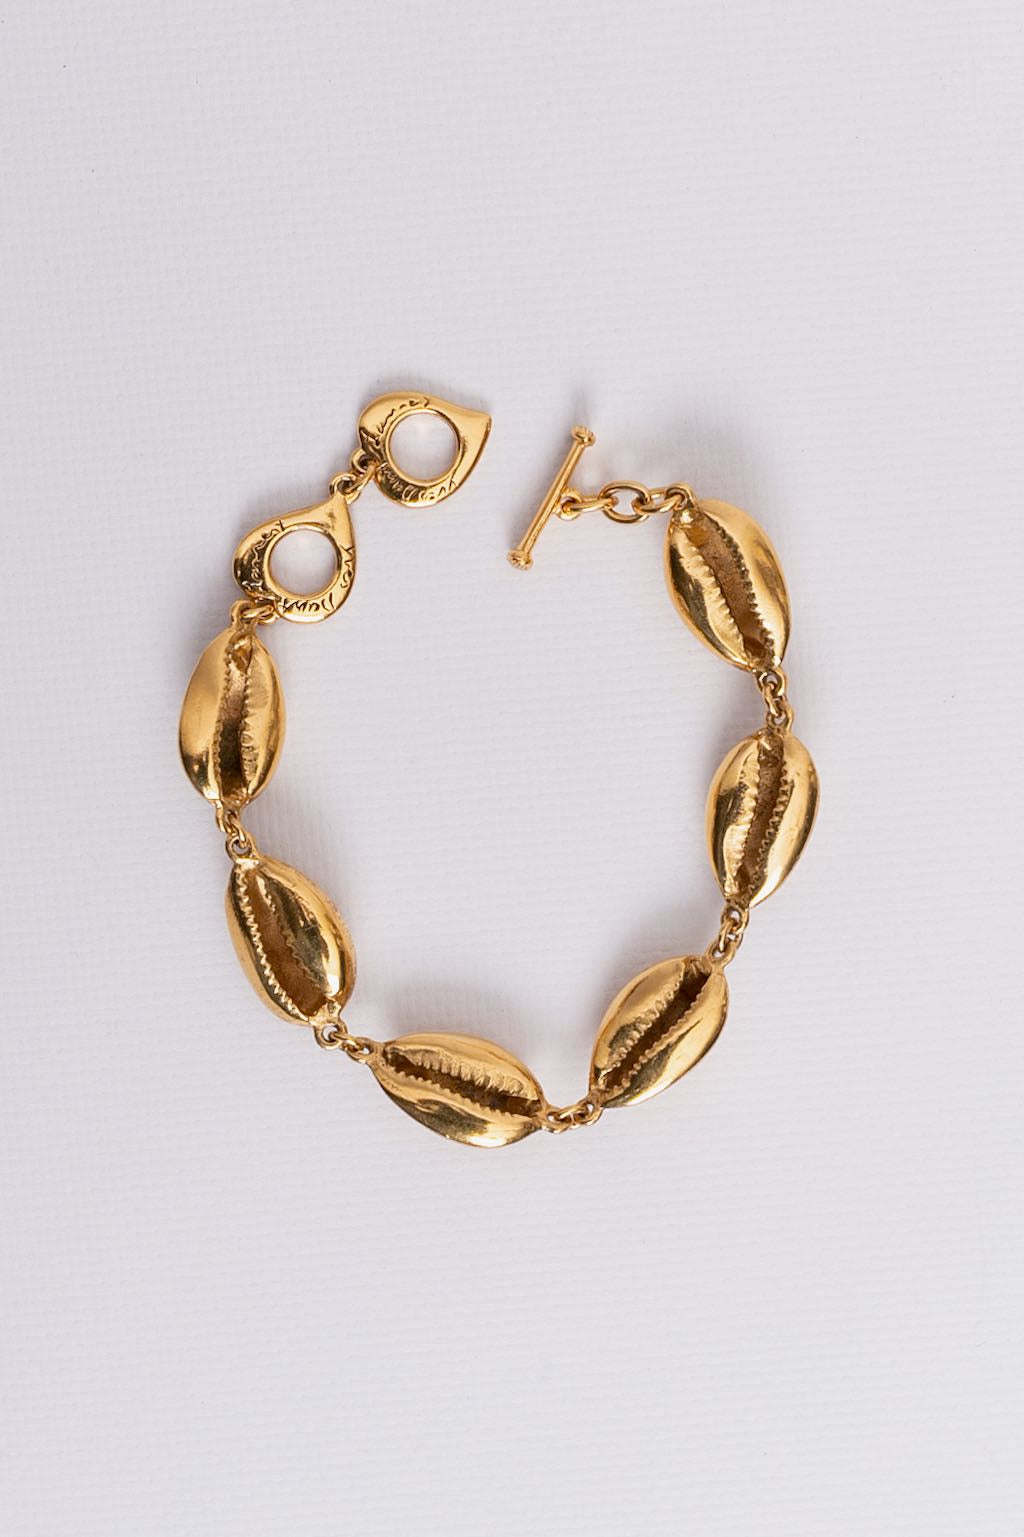 Yves Saint Laurent shell bracelet